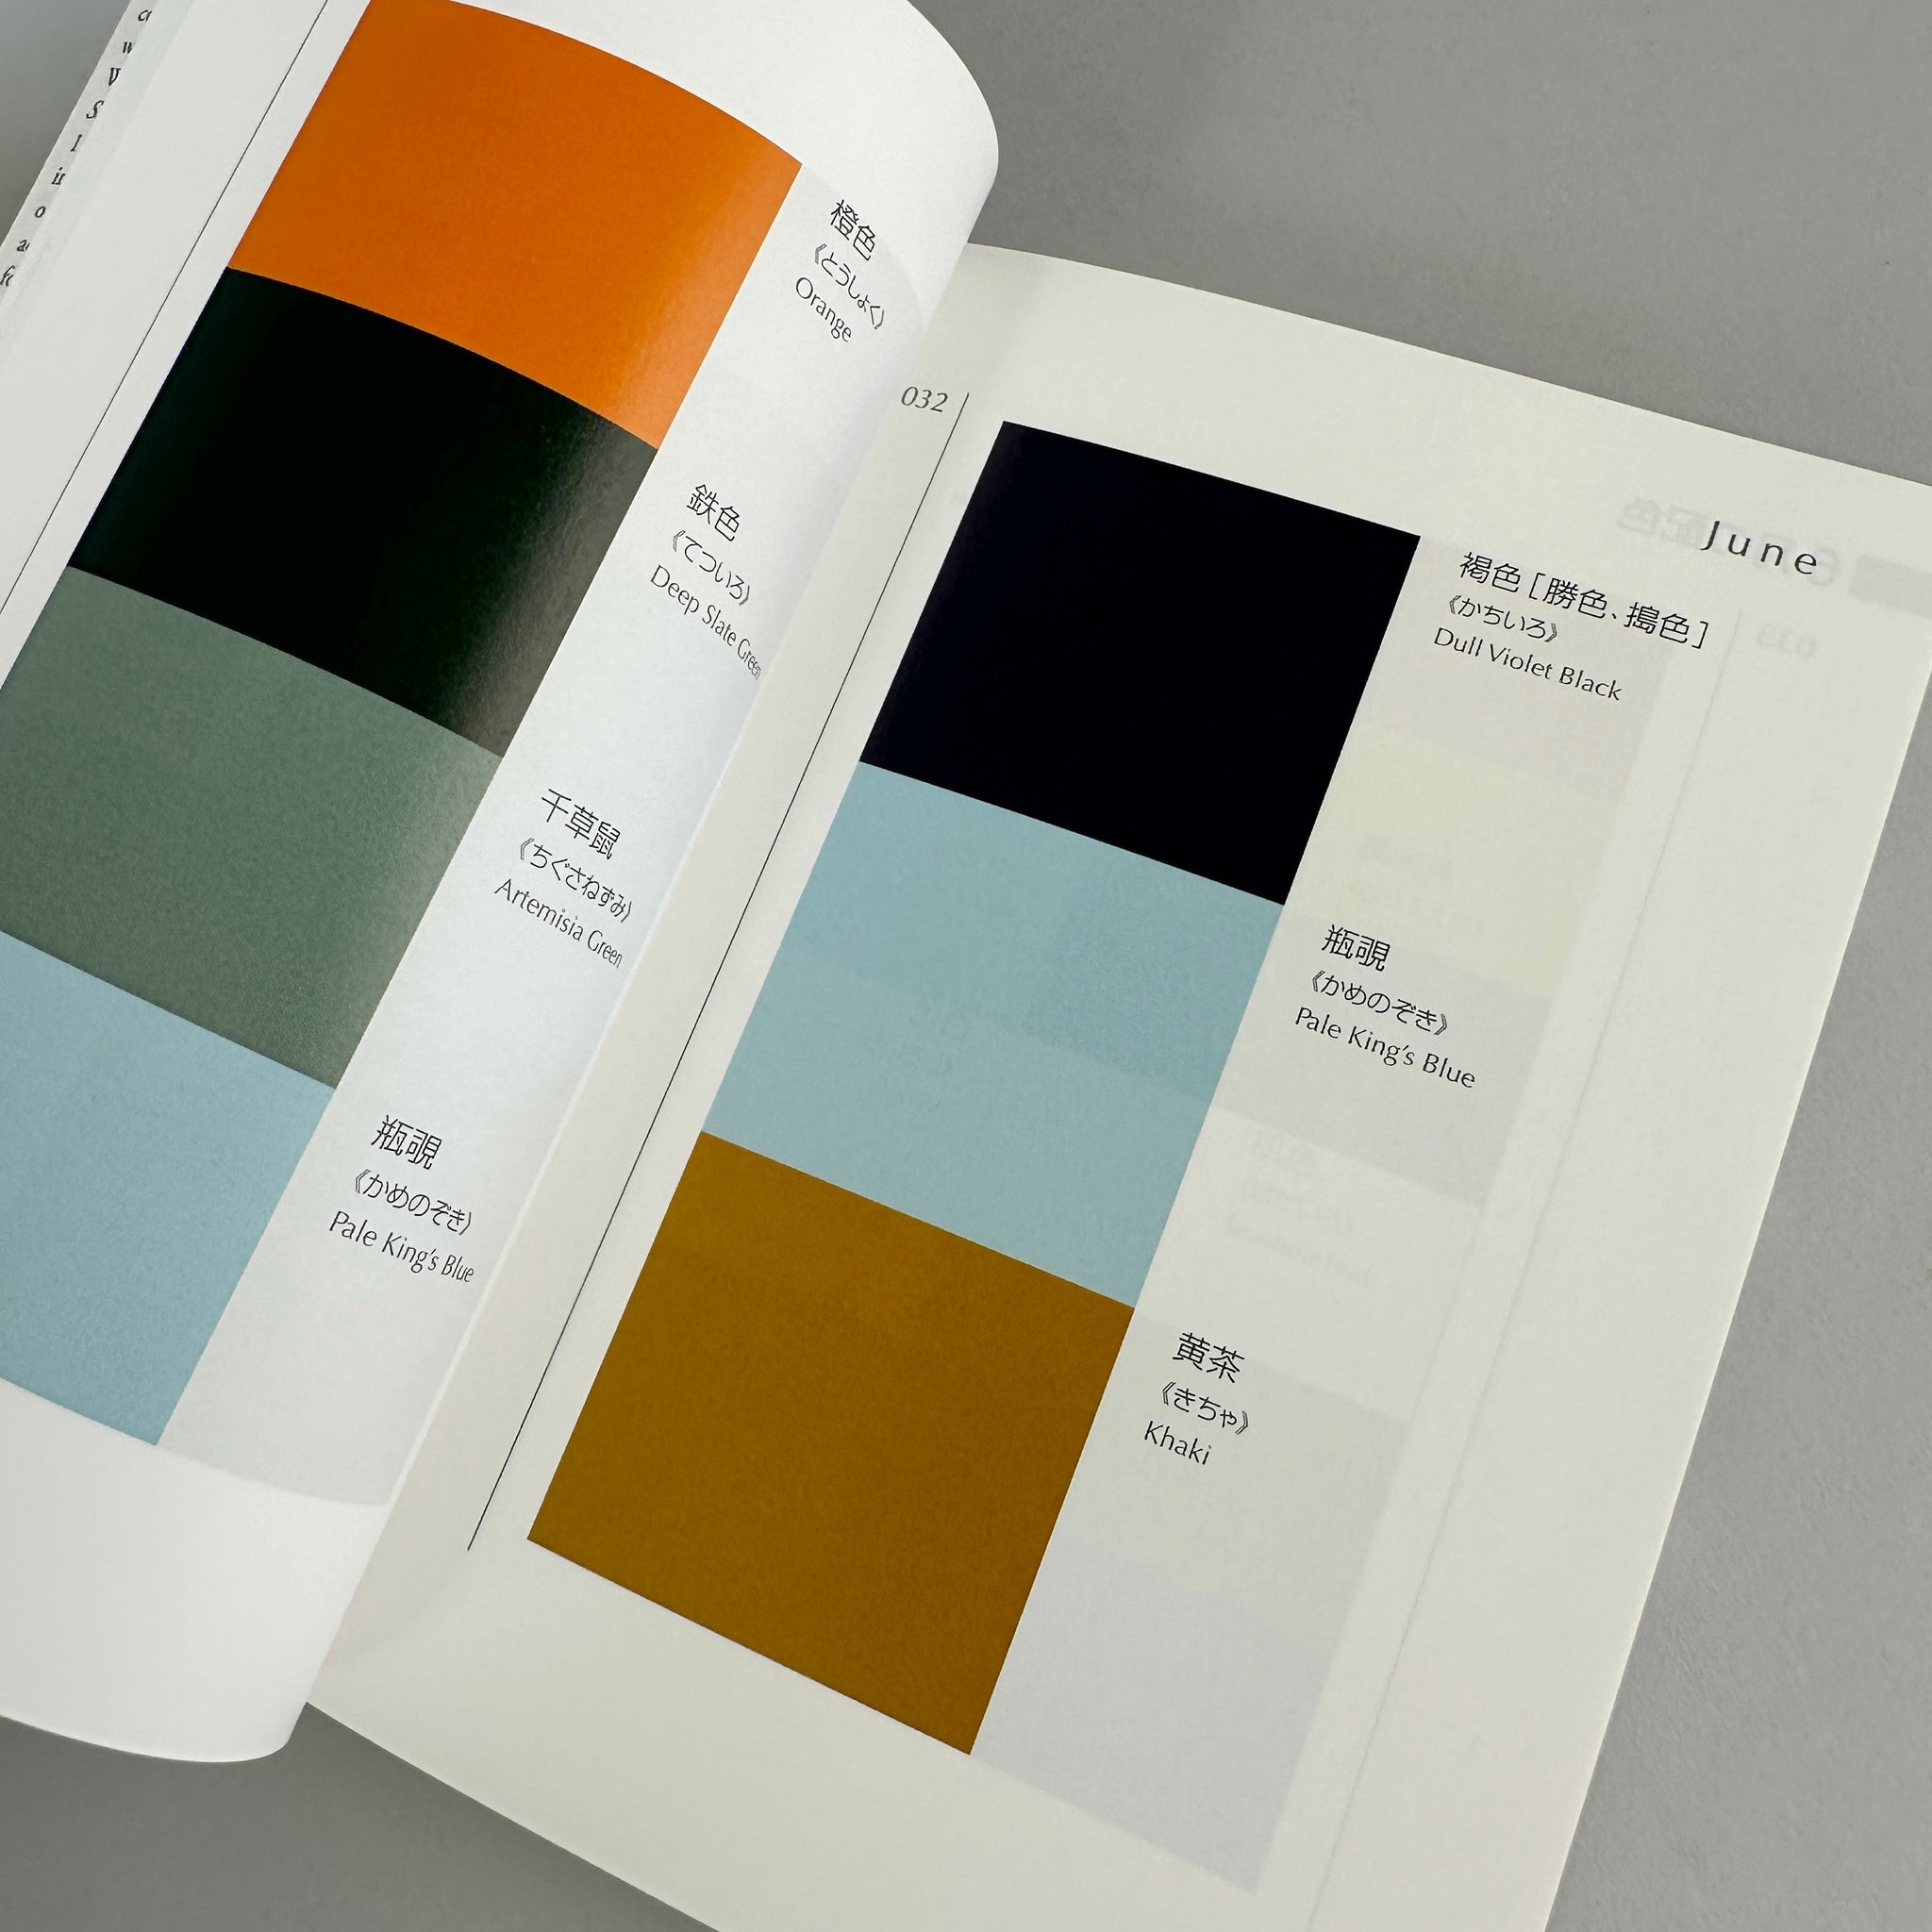 JPN: A Dictionary of Color Combinations Vol. 2 – Kiriko Made